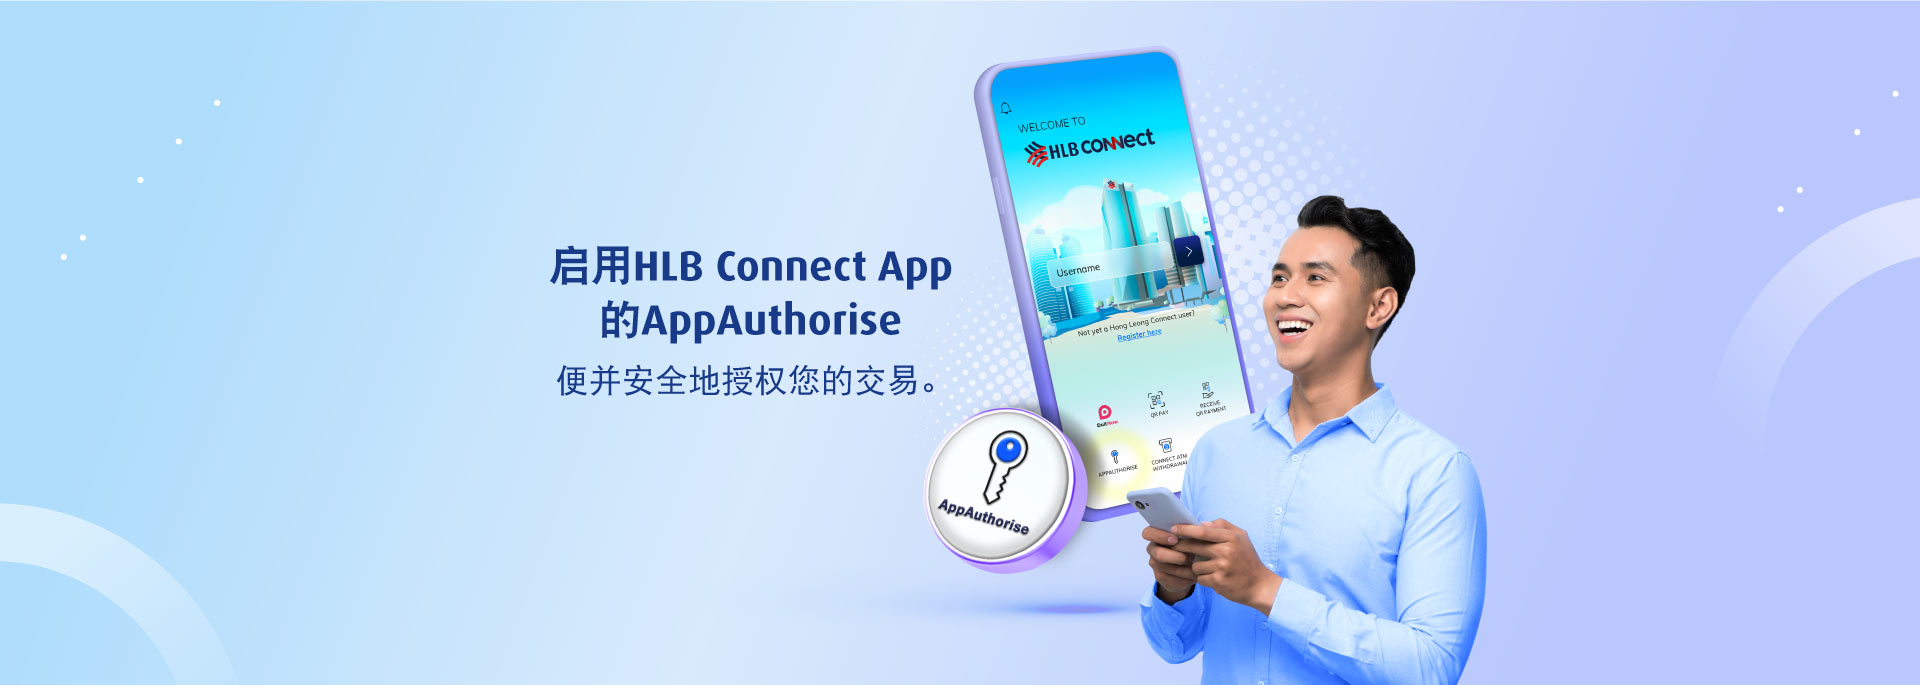 启用 HLB Connect App 的 AppAuthorise